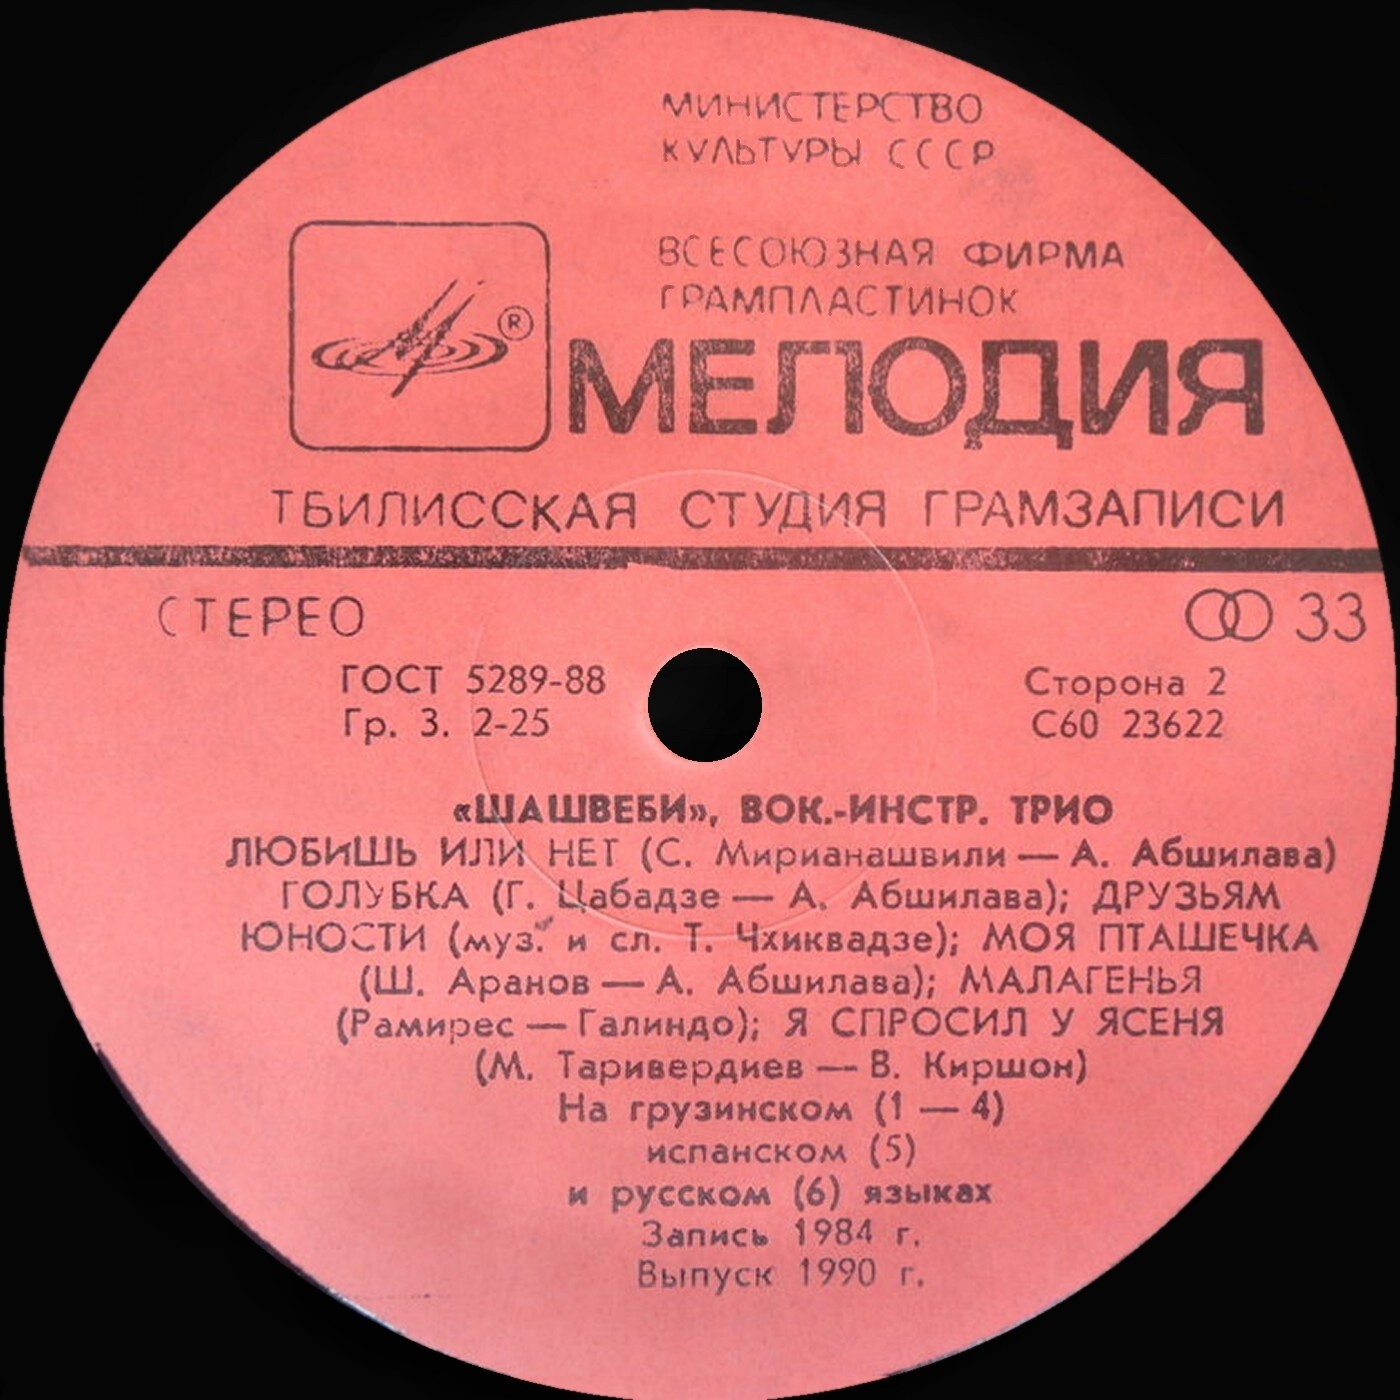 ВОКАЛЬНО-ИНСТР. ТРИО «ШАШВЕБИ»: Эдуард Сепашвили, Котэ Макаридзе и Гурам Баларджишвили в собственном сопровождении на гитарах.